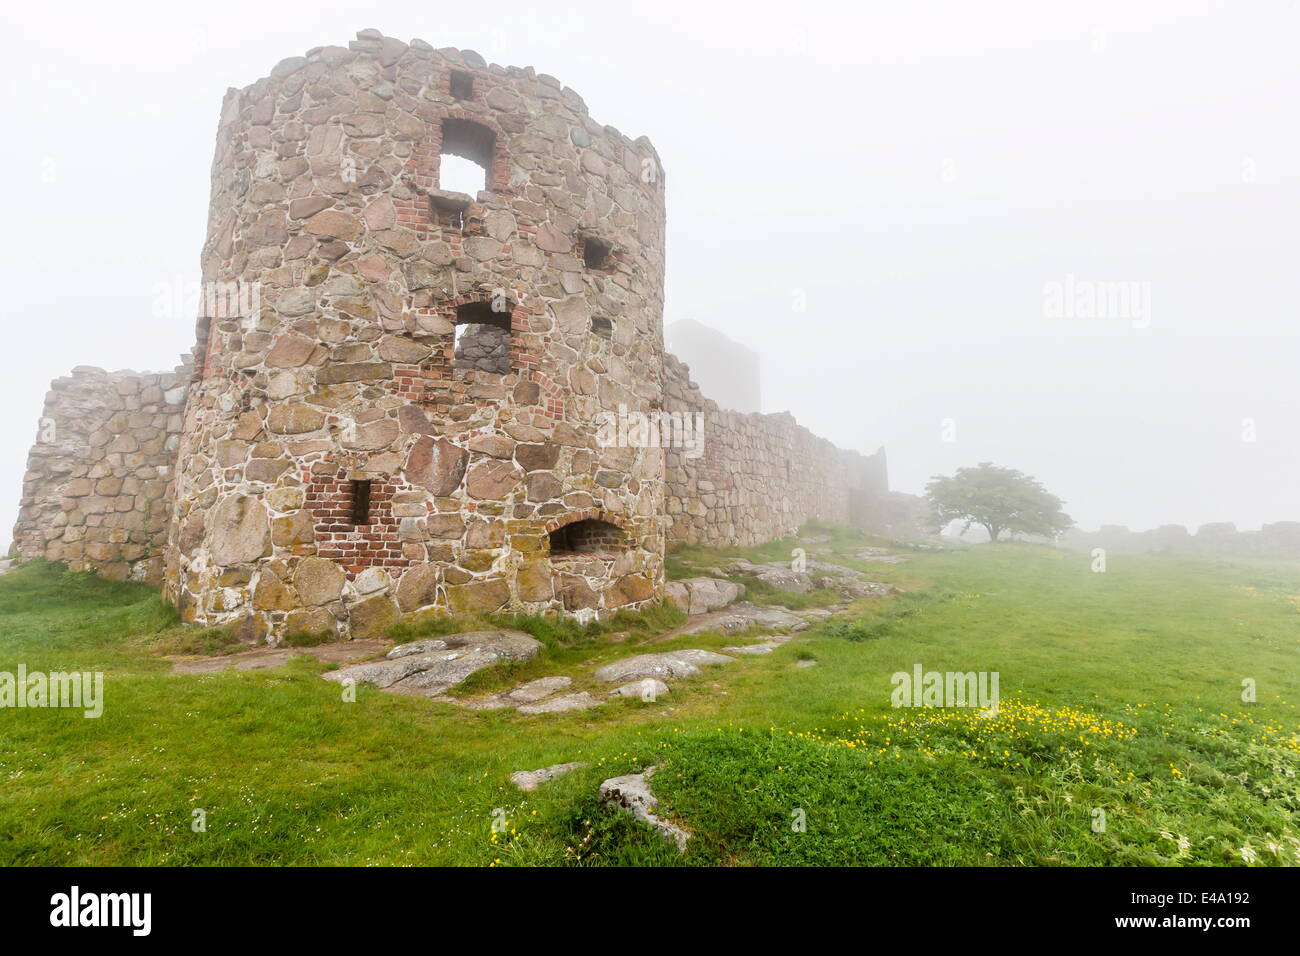 La nebbia avvolge il castello Hammershus sulla maggior parte punta nord dell'isola di Bornholm, Danimarca, Scandinavia, Europa Foto Stock